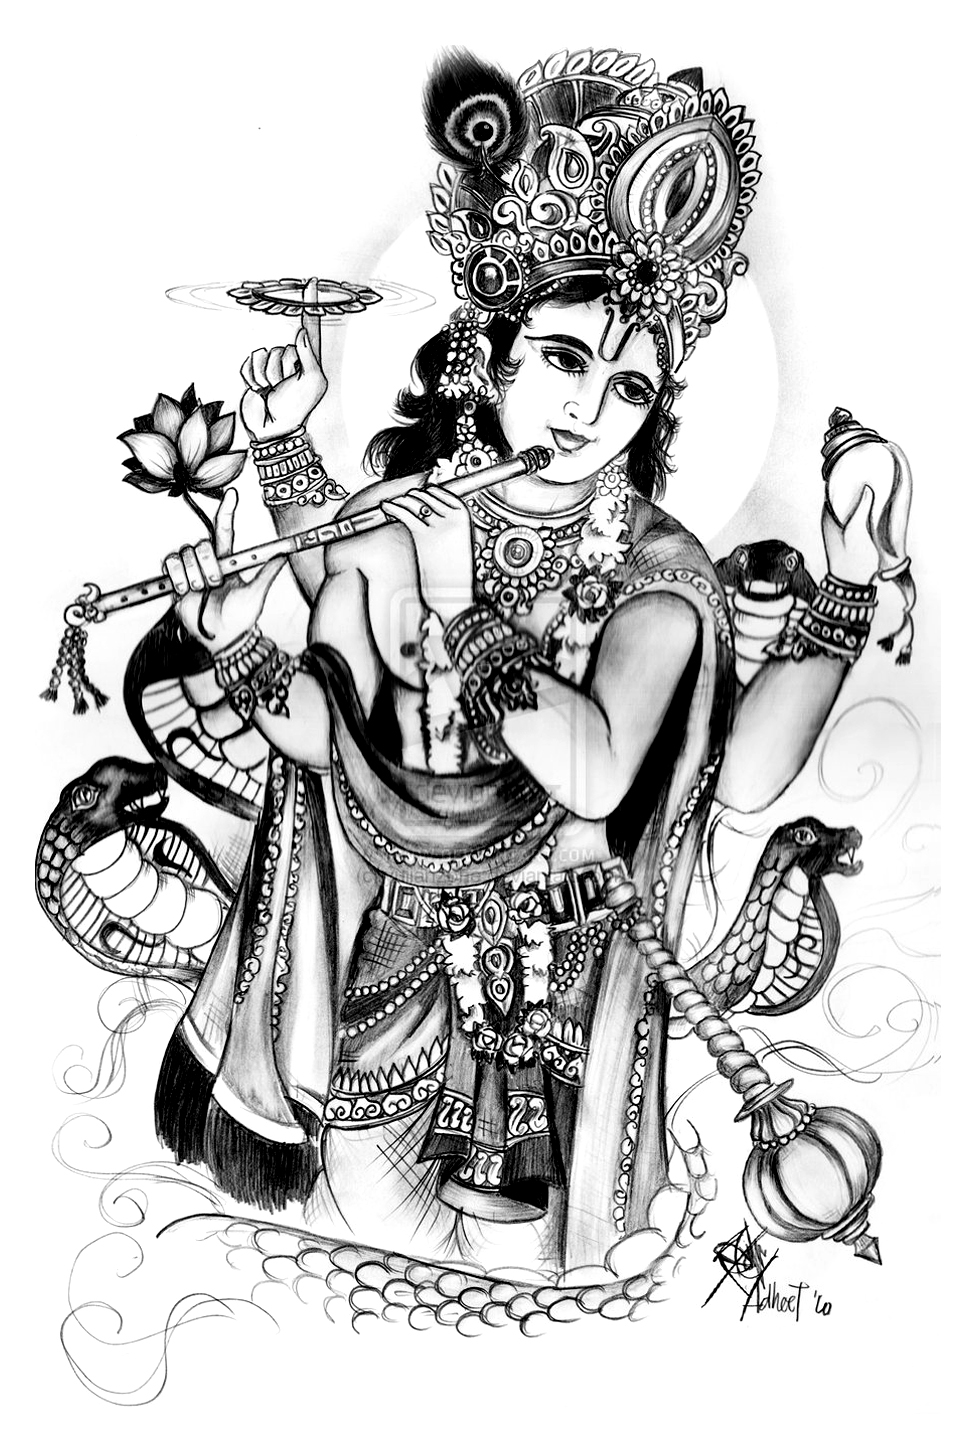 Vishnu: eine der Hauptgottheiten des Hinduismus und das höchste Wesen in der Tradition des Vaishnavismus. Vishnu wird auch als der 'Bewahrer' der hinduistischen Dreifaltigkeit (Trimurti) bezeichnet, zu der auch Brahma und Shiva gehören.